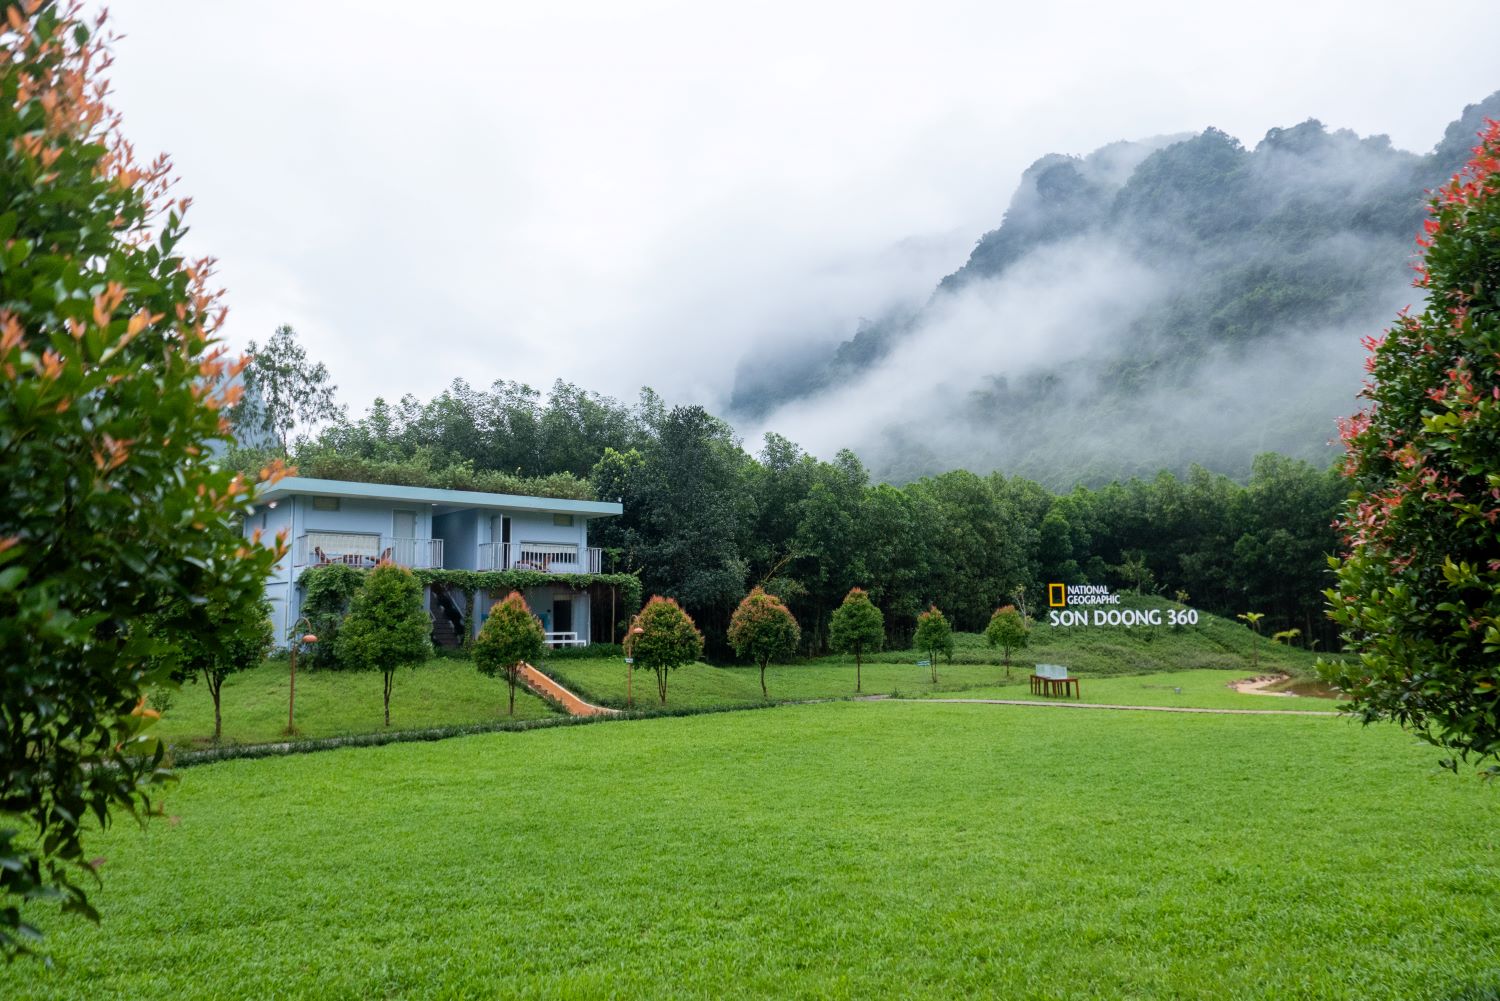 Chày Lập Farmstay là một trong những khu lưu trú độc đáo nhất Quảng Bình.